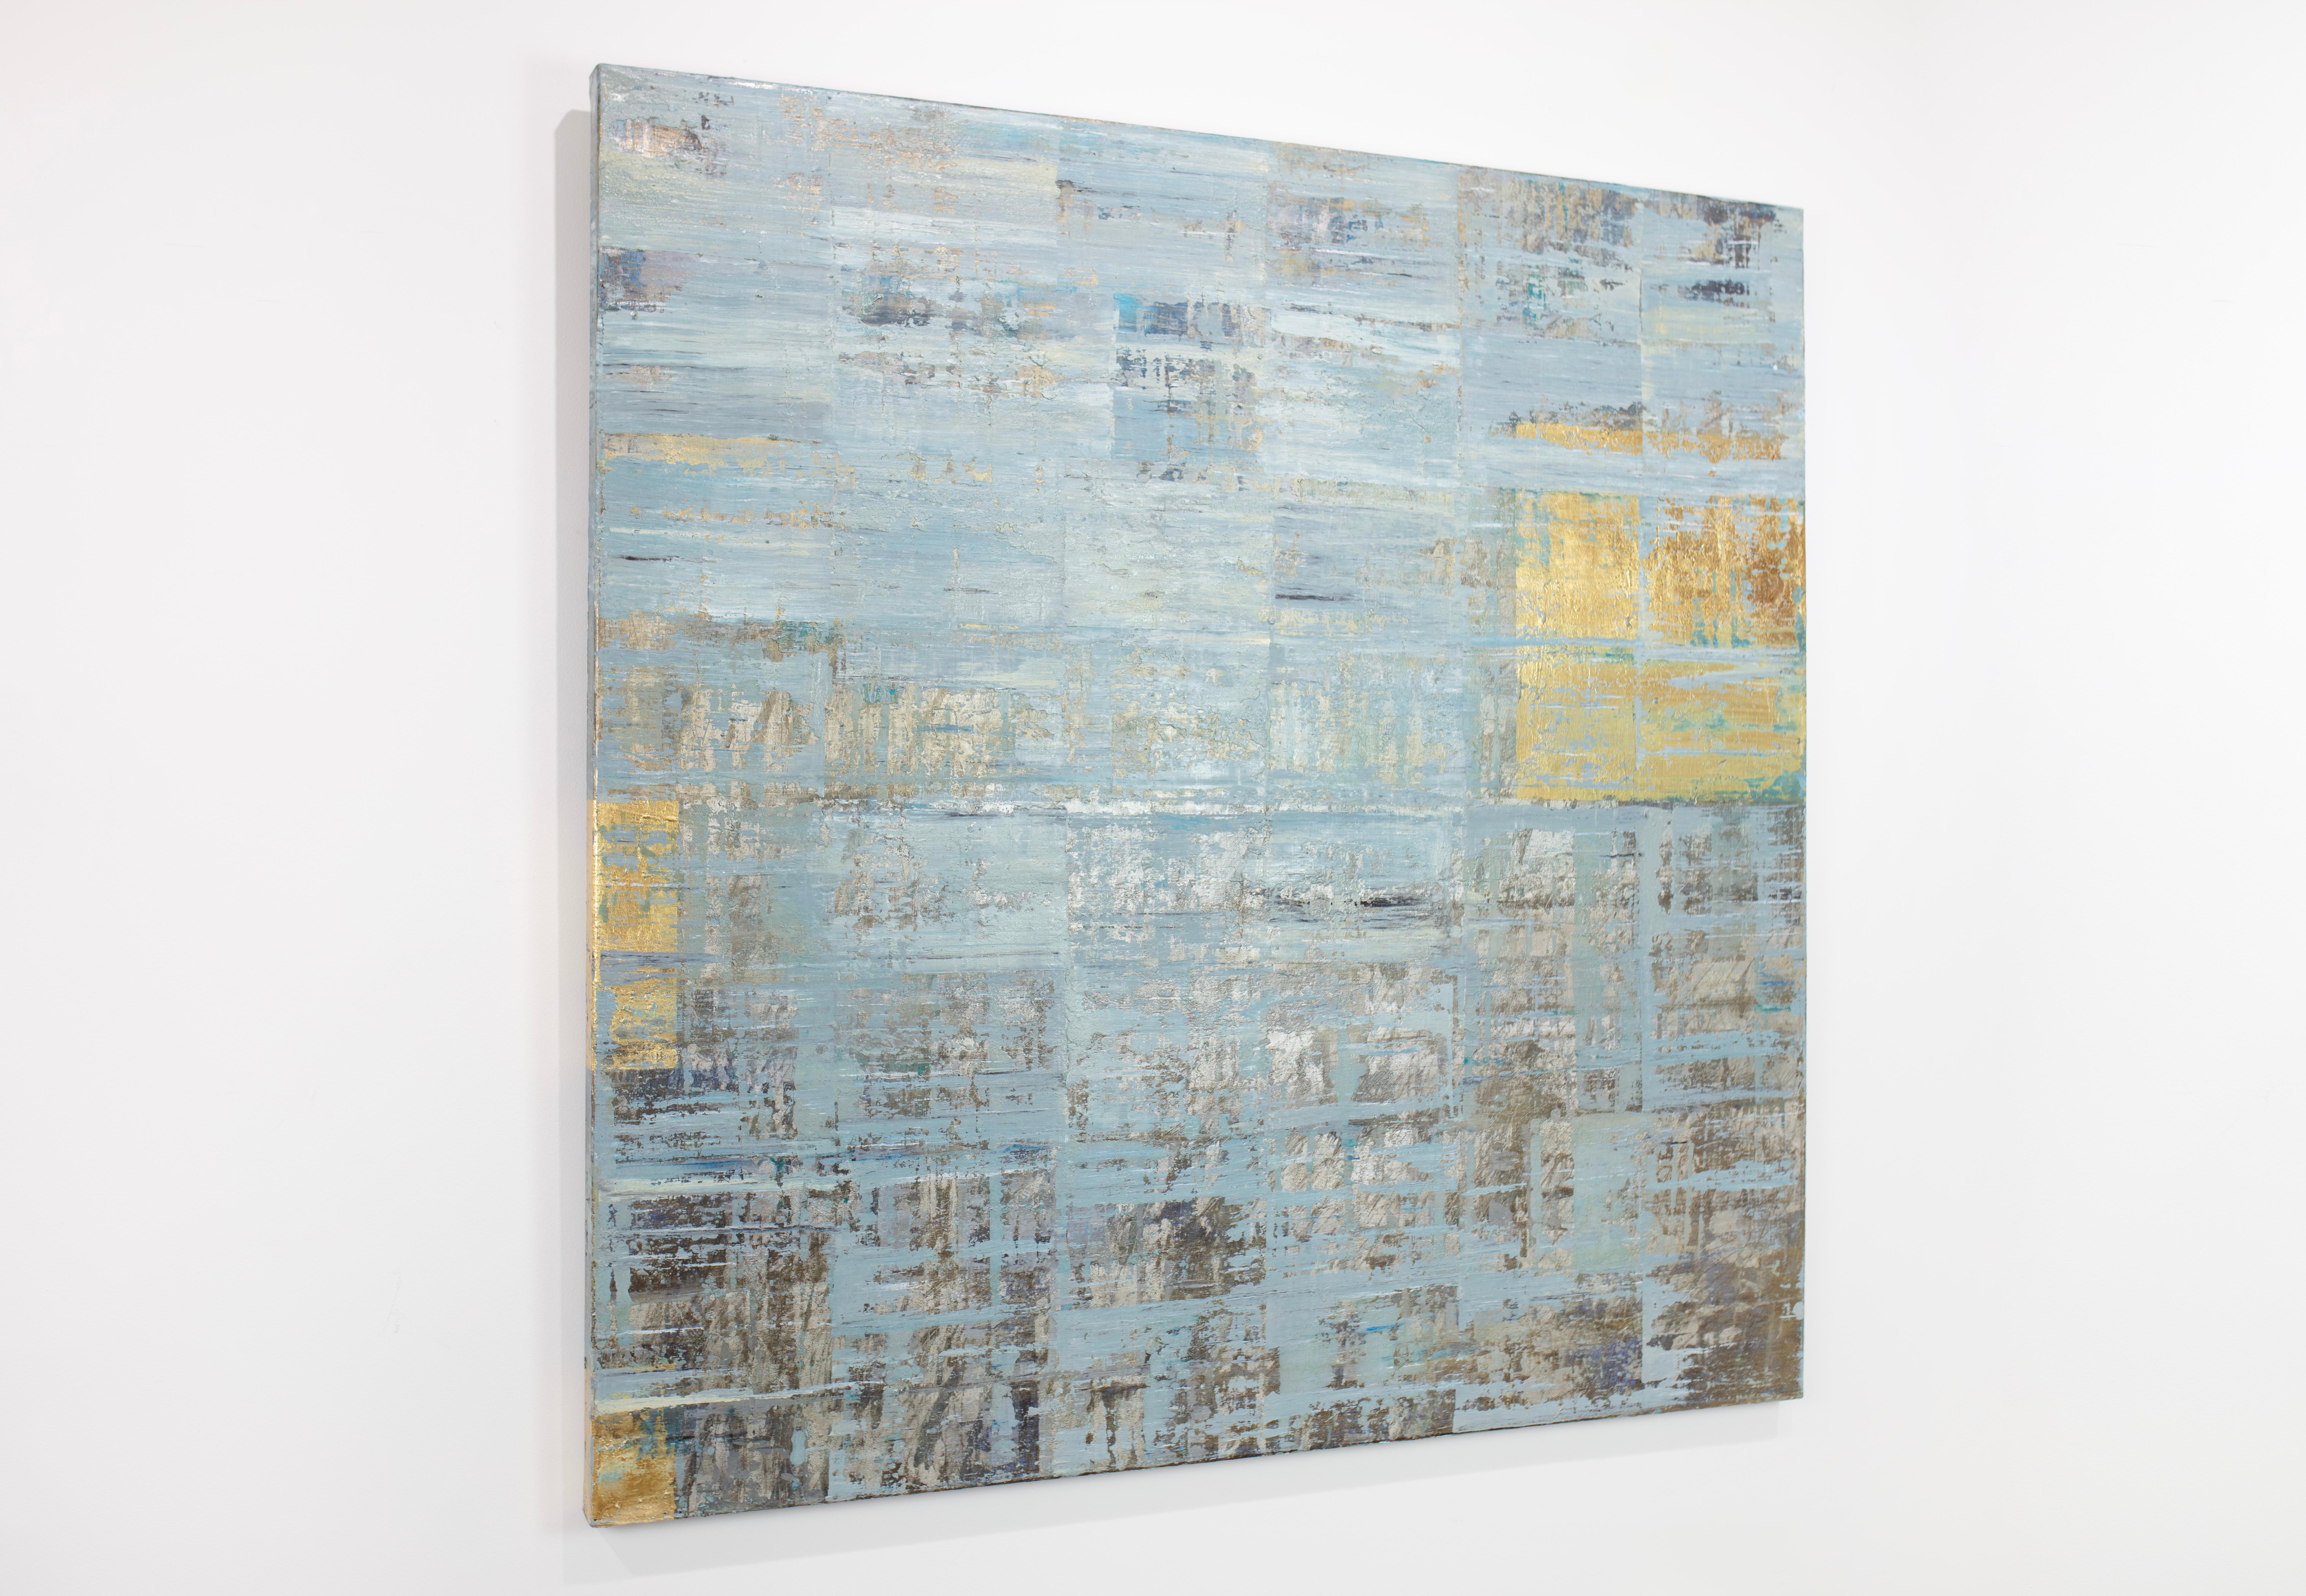 Cette peinture géométrique abstraite de Ned Martin est réalisée à l'huile sur toile enveloppée, et présente une palette de bleus froids avec des sous-couches et des accents métalliques dorés et chromés. Elle est signée par l'artiste au dos de la